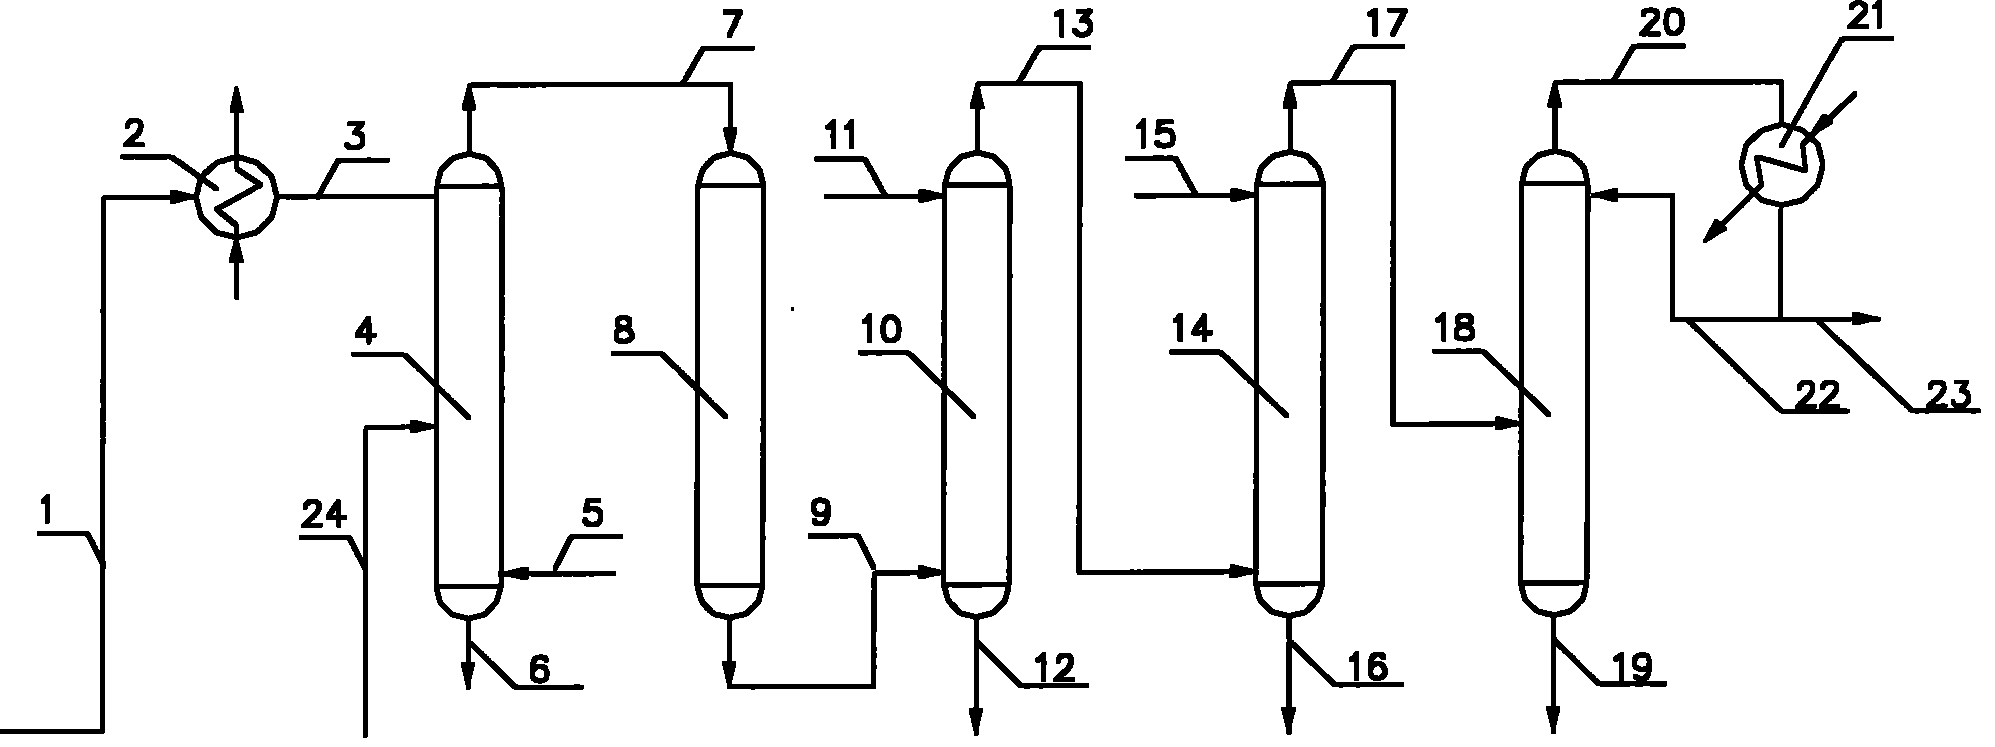 Method for preparing ethene by ethanol dehydration